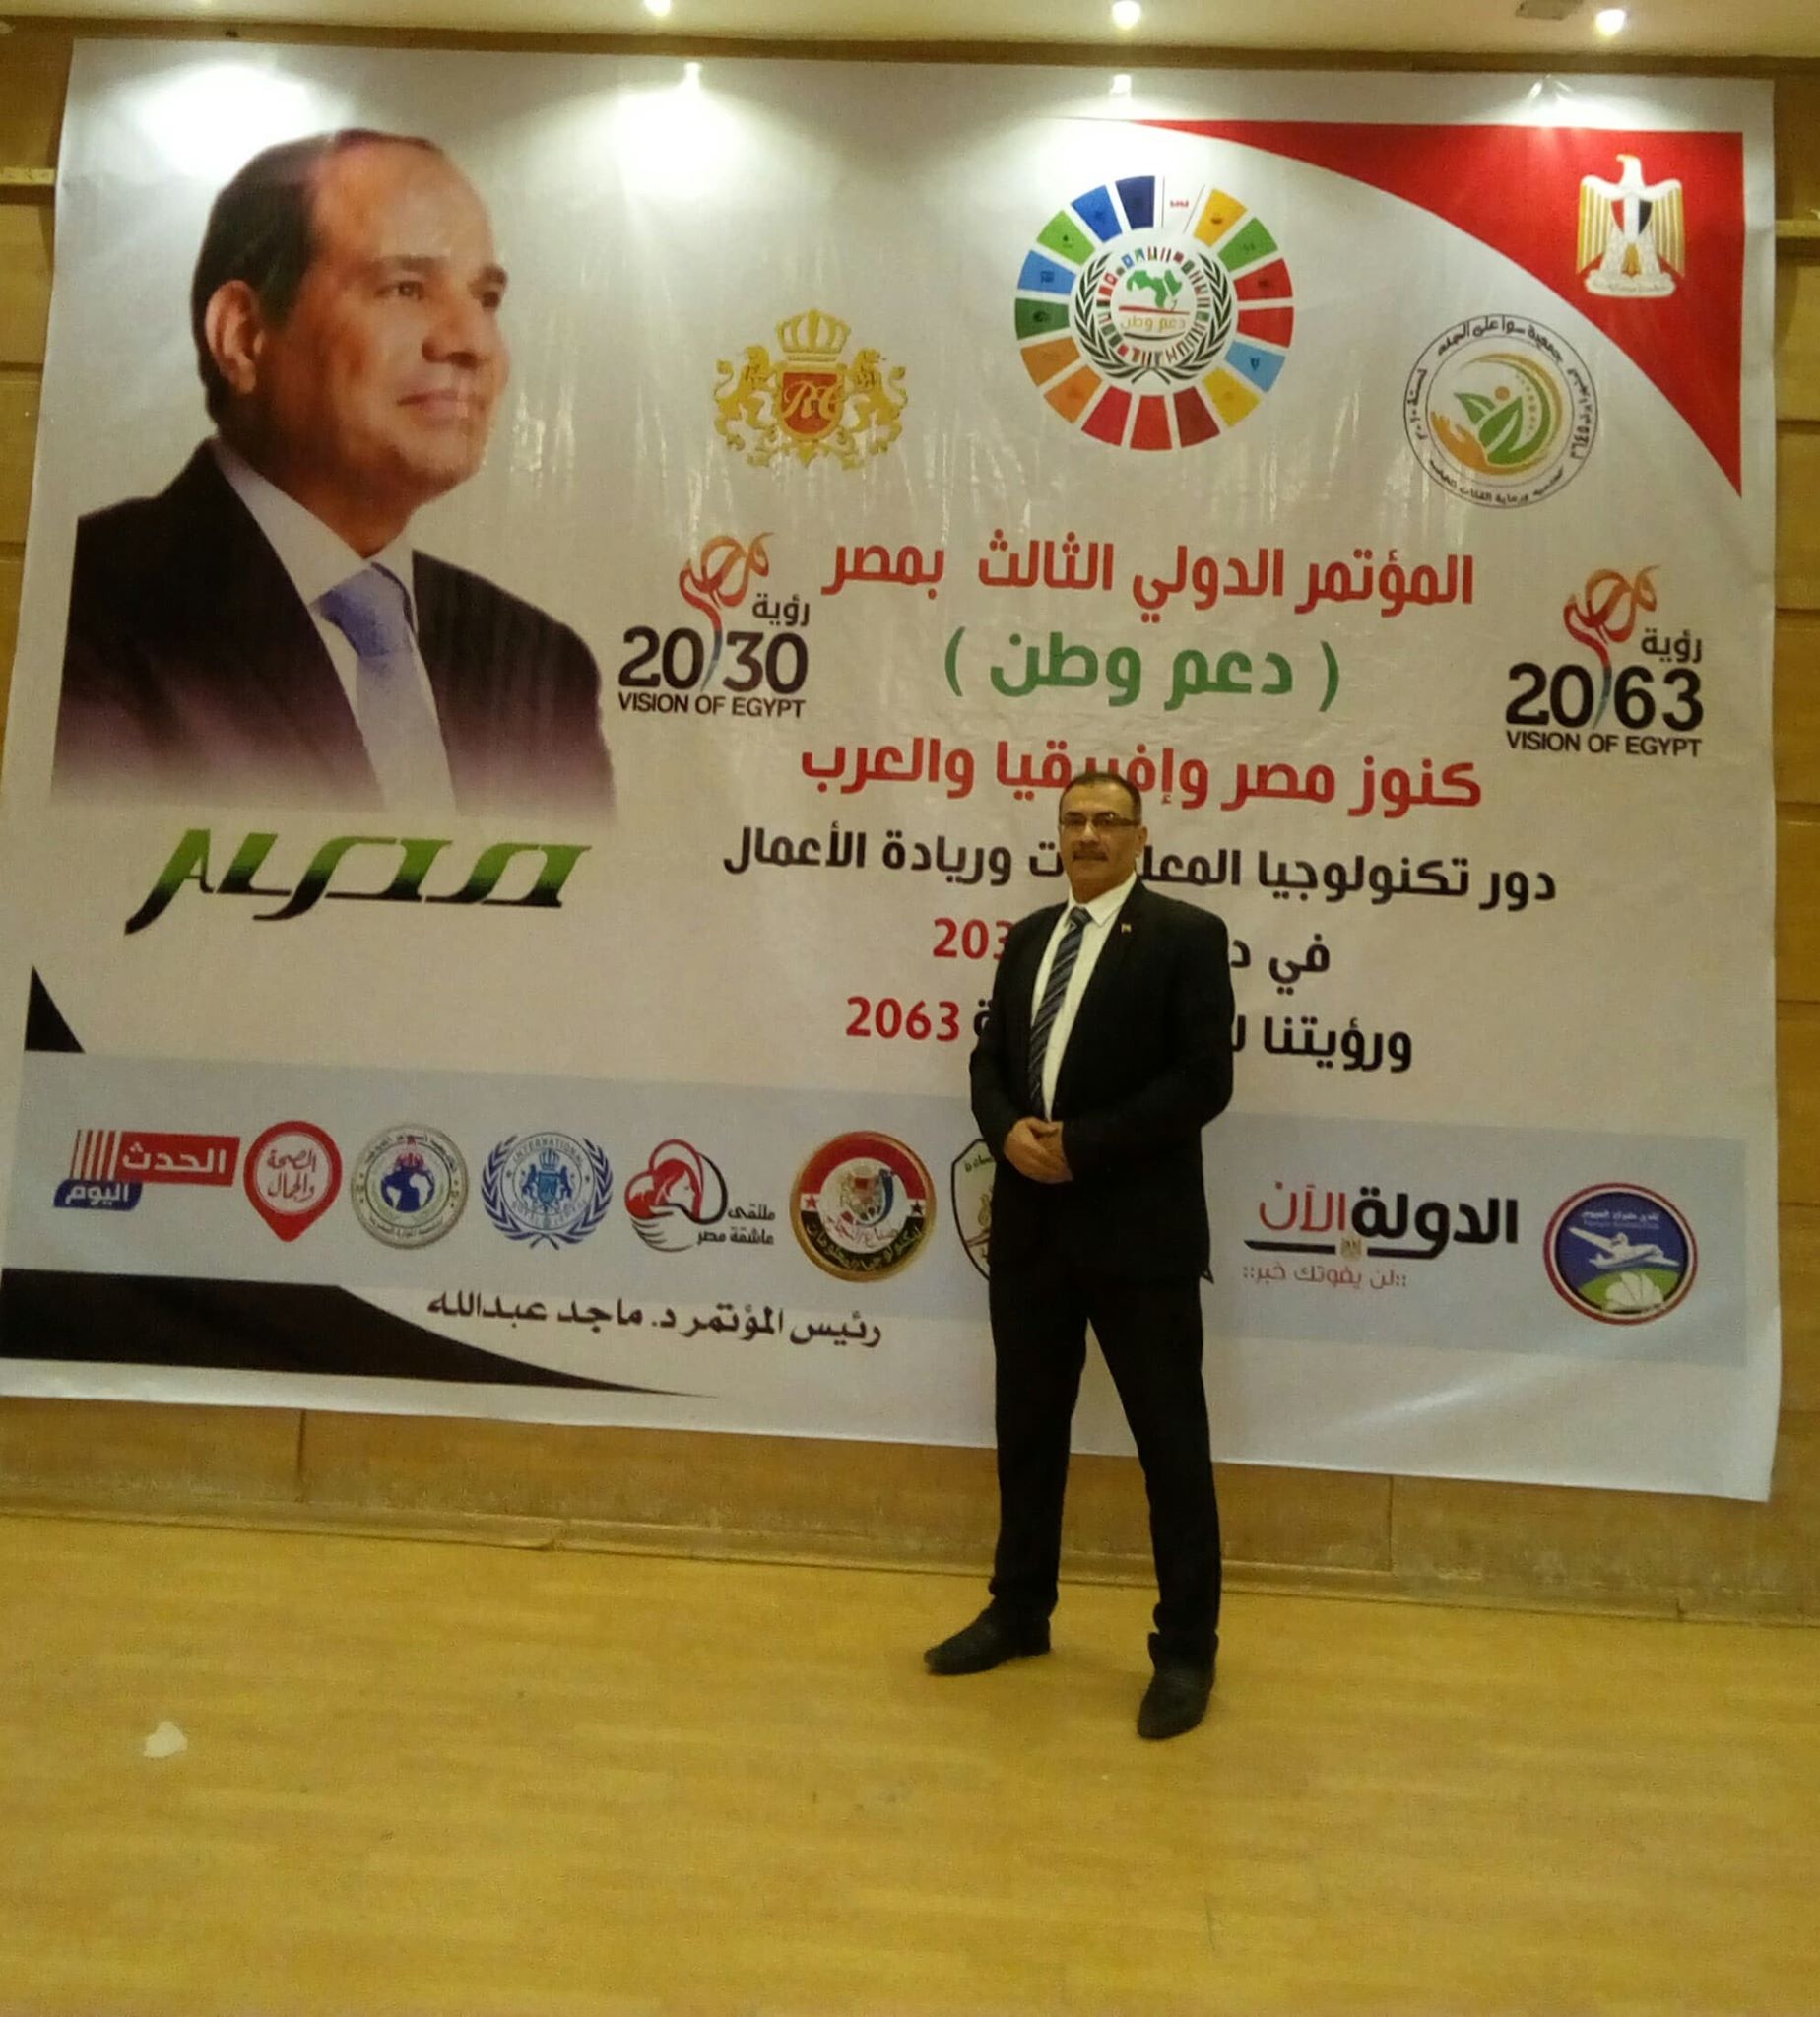 فاعليات وتوصيات المؤتمرالدولي الثالث دعم وطن كنوز مصروافريقيا والعرب